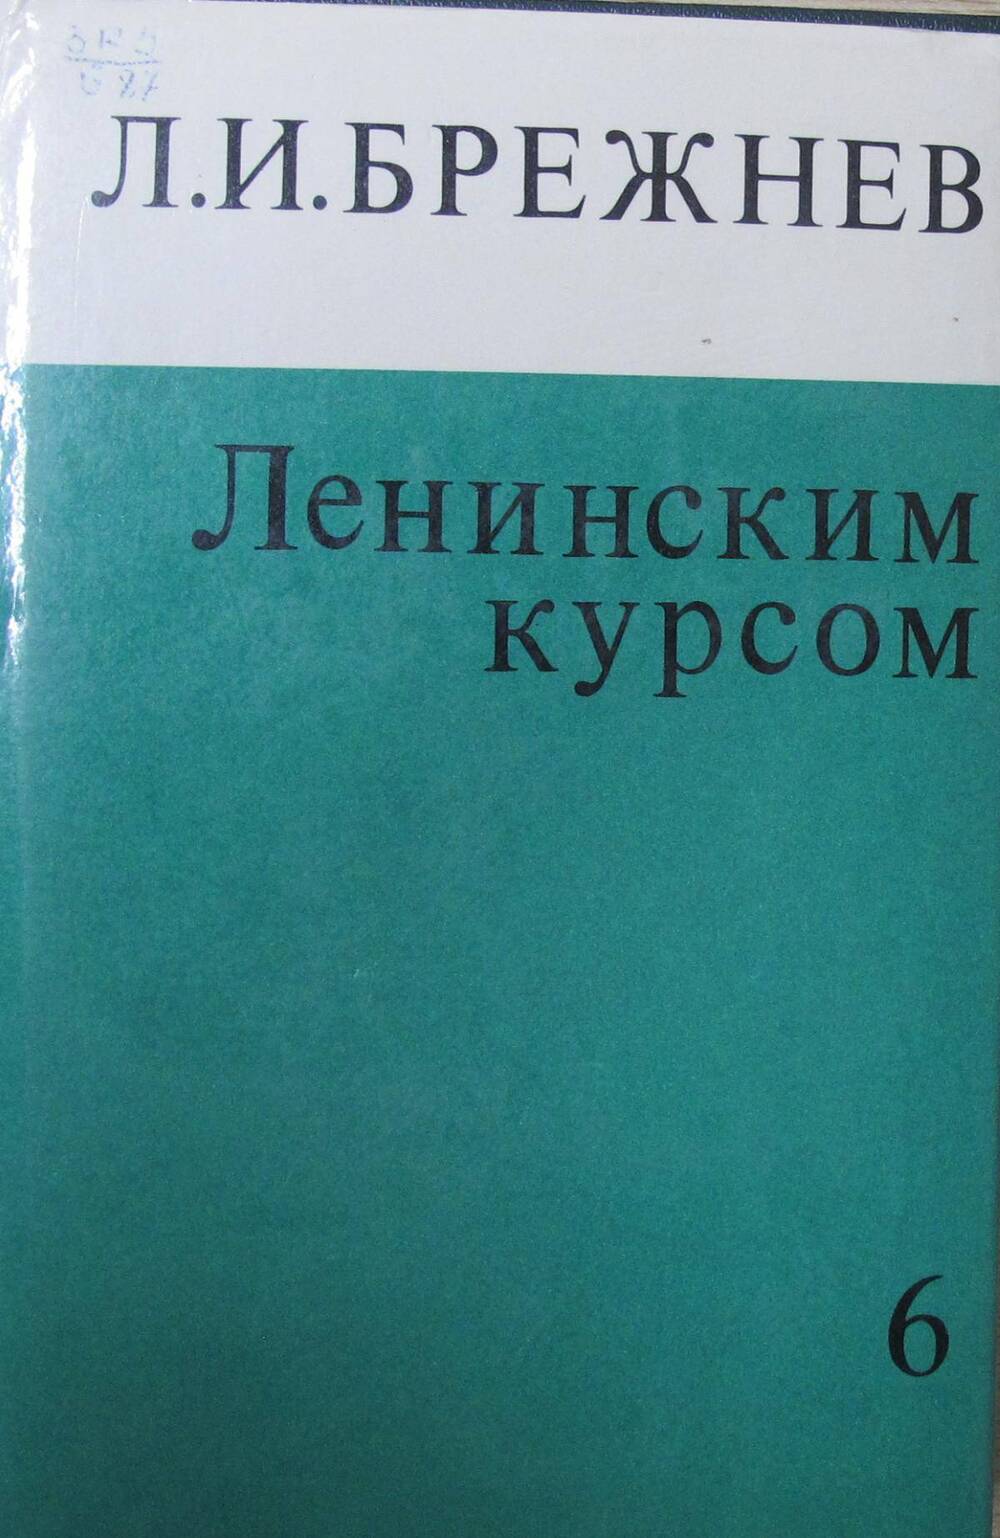 Книга Ленинским курсом. Речи и статьи. Том 6.